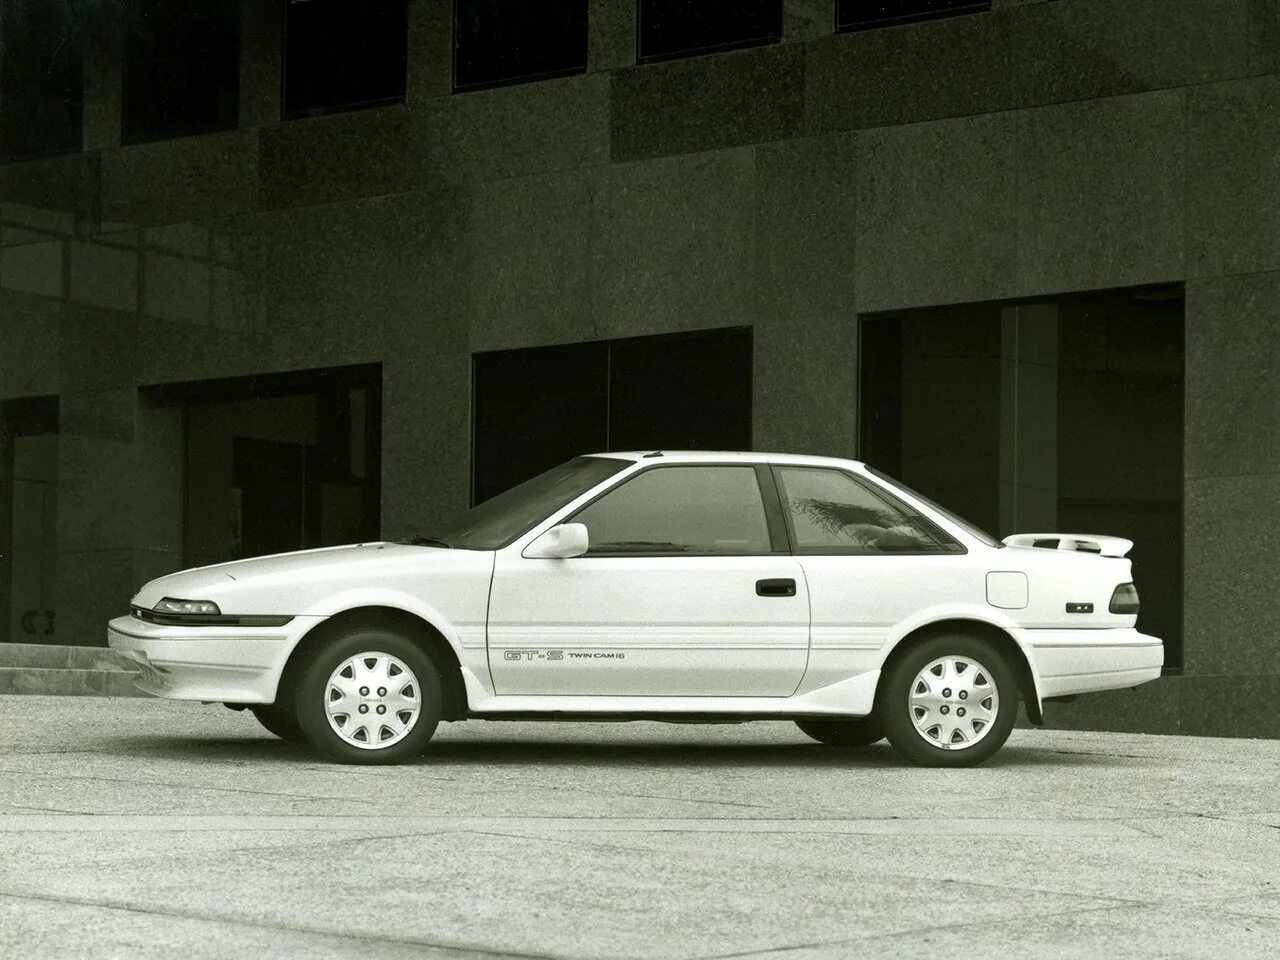 Тойота 6 поколения. Toyota Corolla vi (e90) купе. Toyota Corolla 1987 купе. Toyota Corolla 6 поколение. Toyota Corolla e90 Coupe.